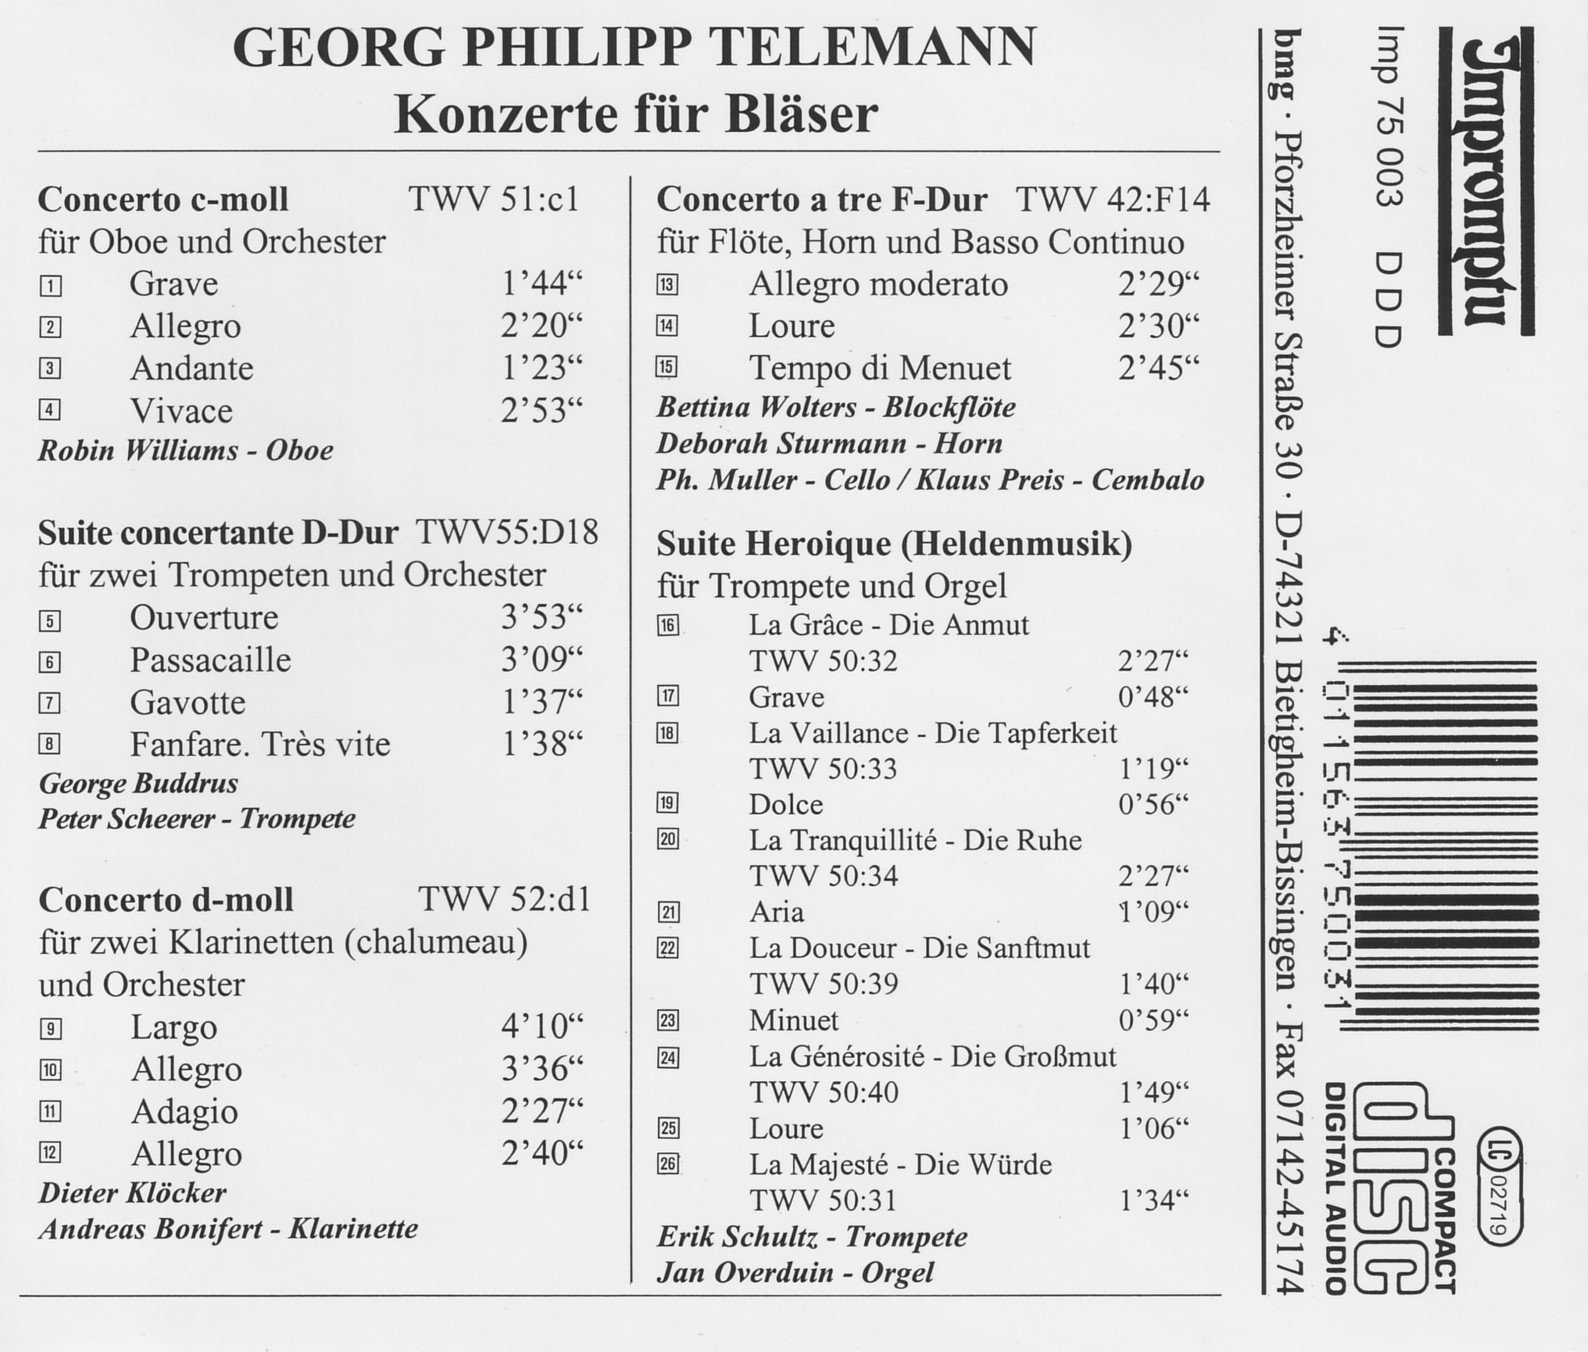 Georg Philipp Telemann - Konzerte für Bläser